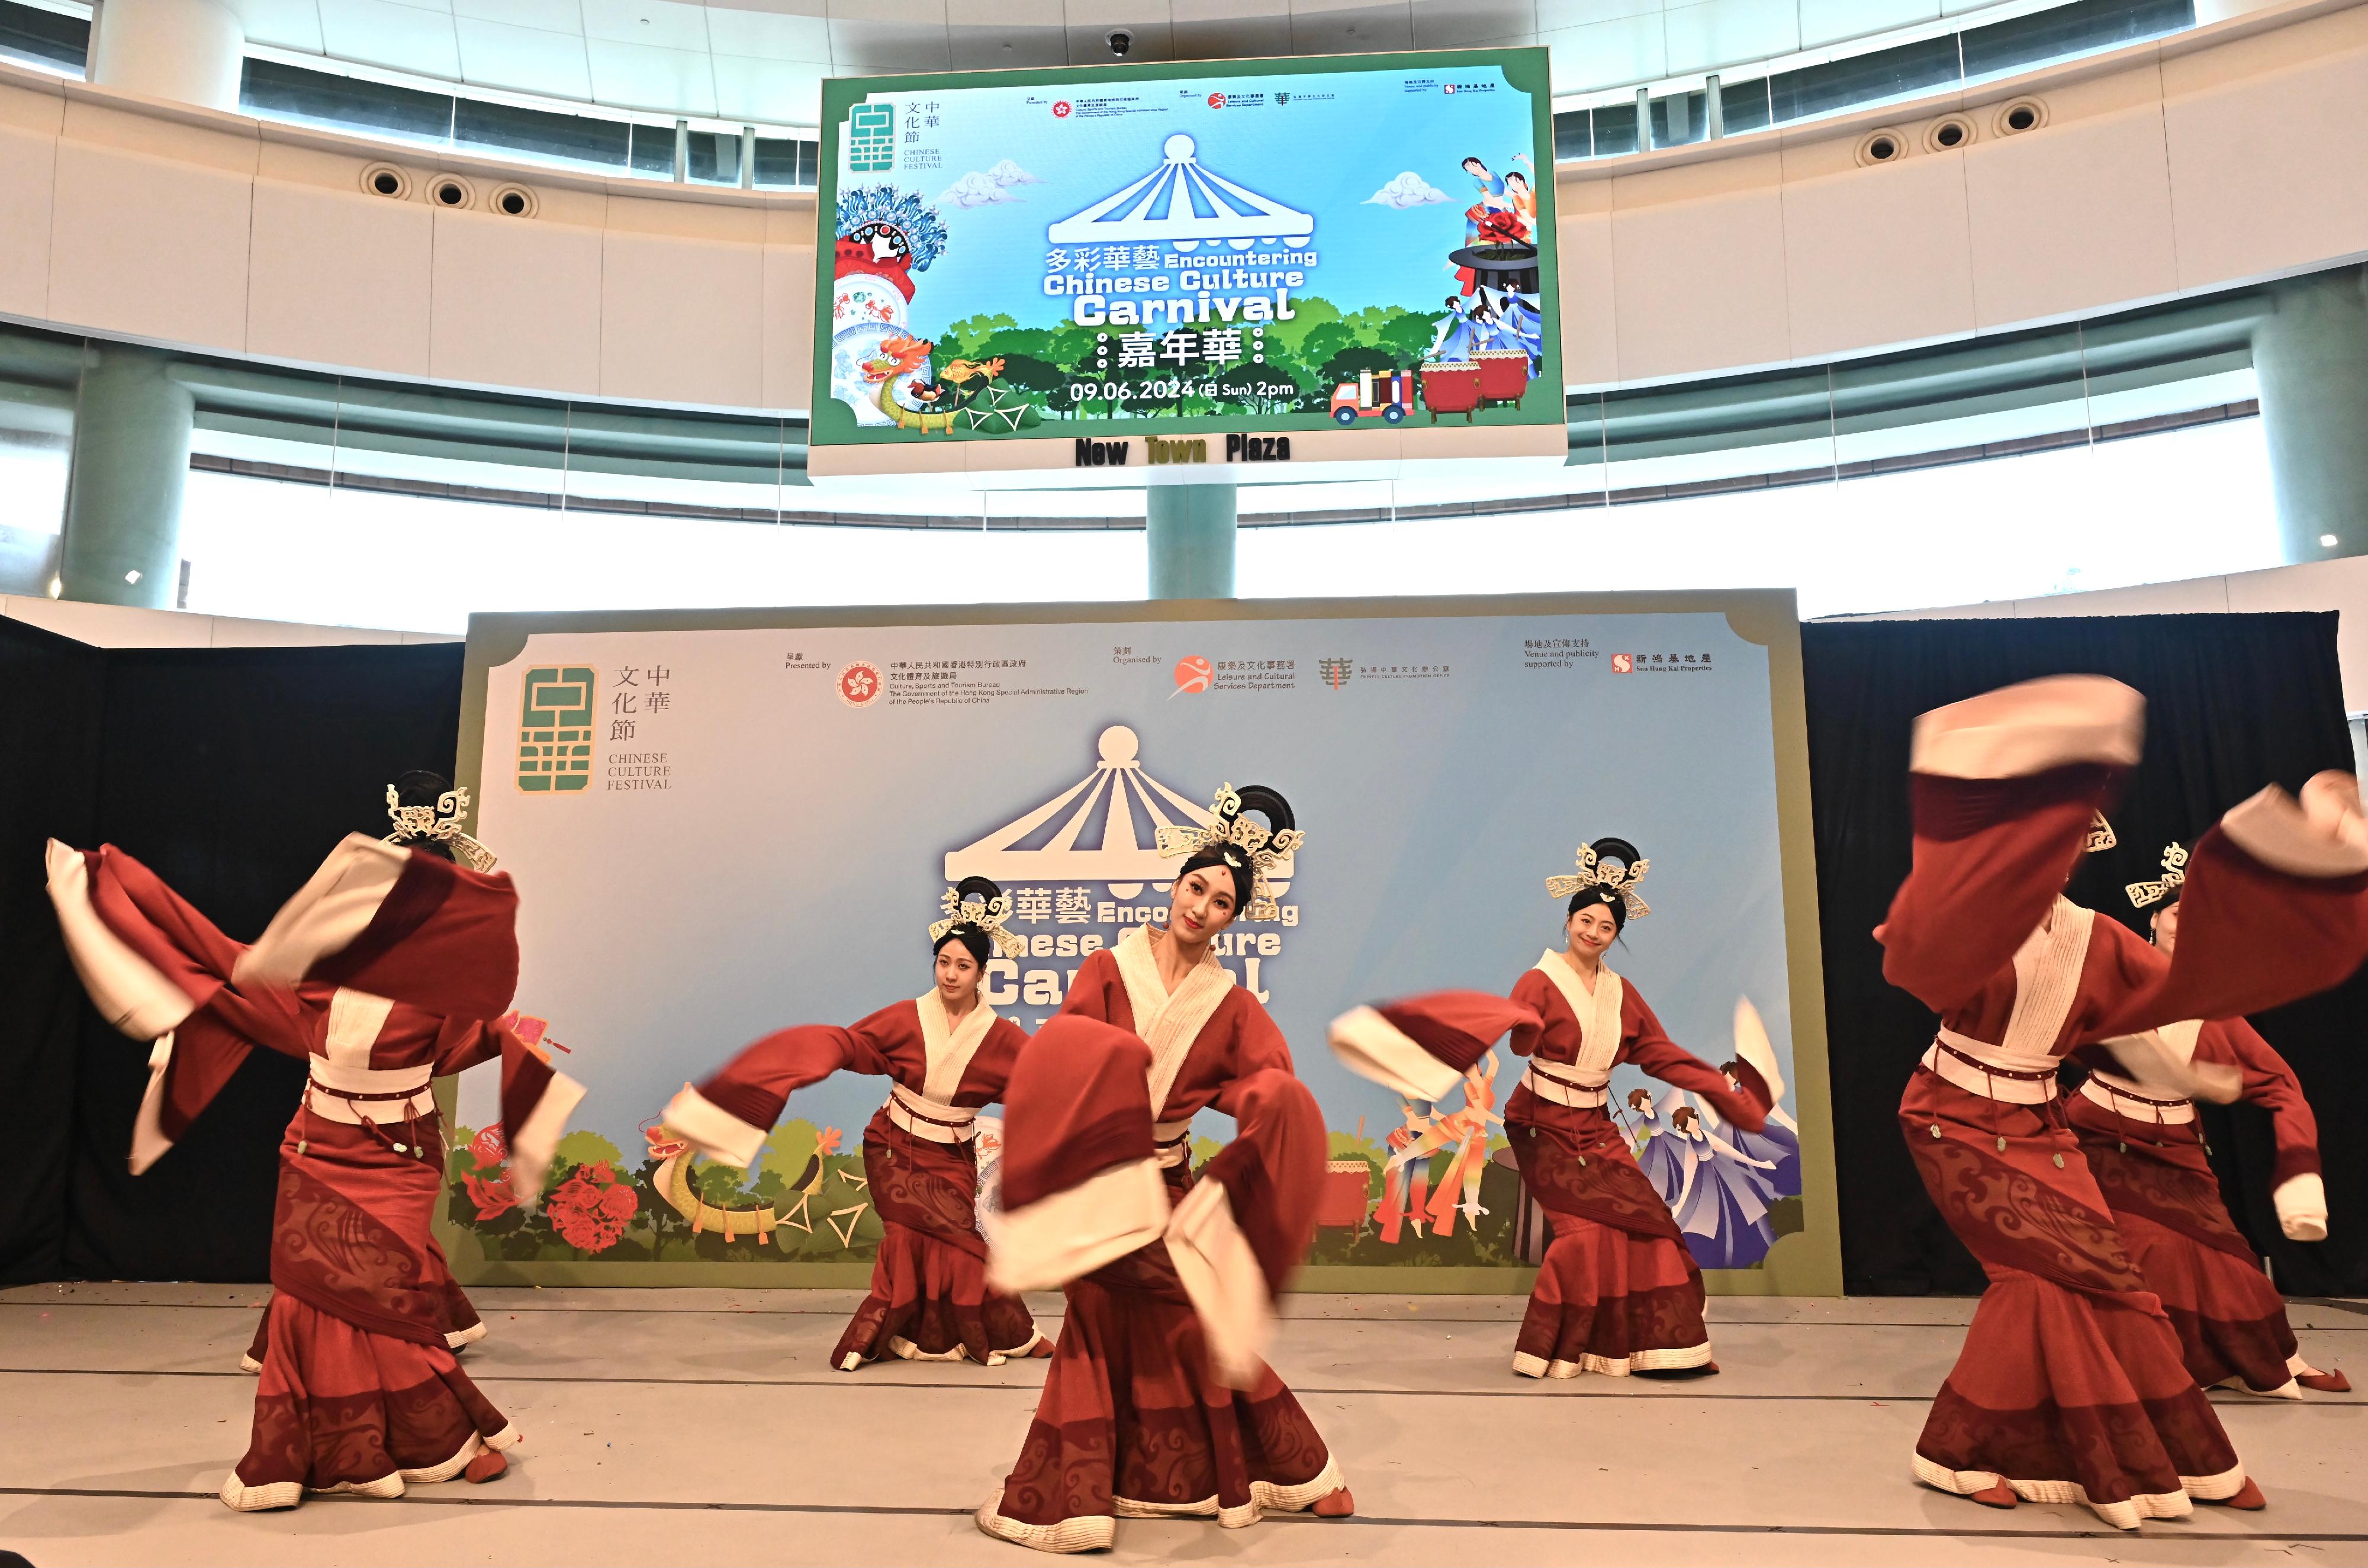 首届「中华文化节」今日（六月九日）下午在沙田举办《多彩华艺》嘉年华。图示现场舞台表演。